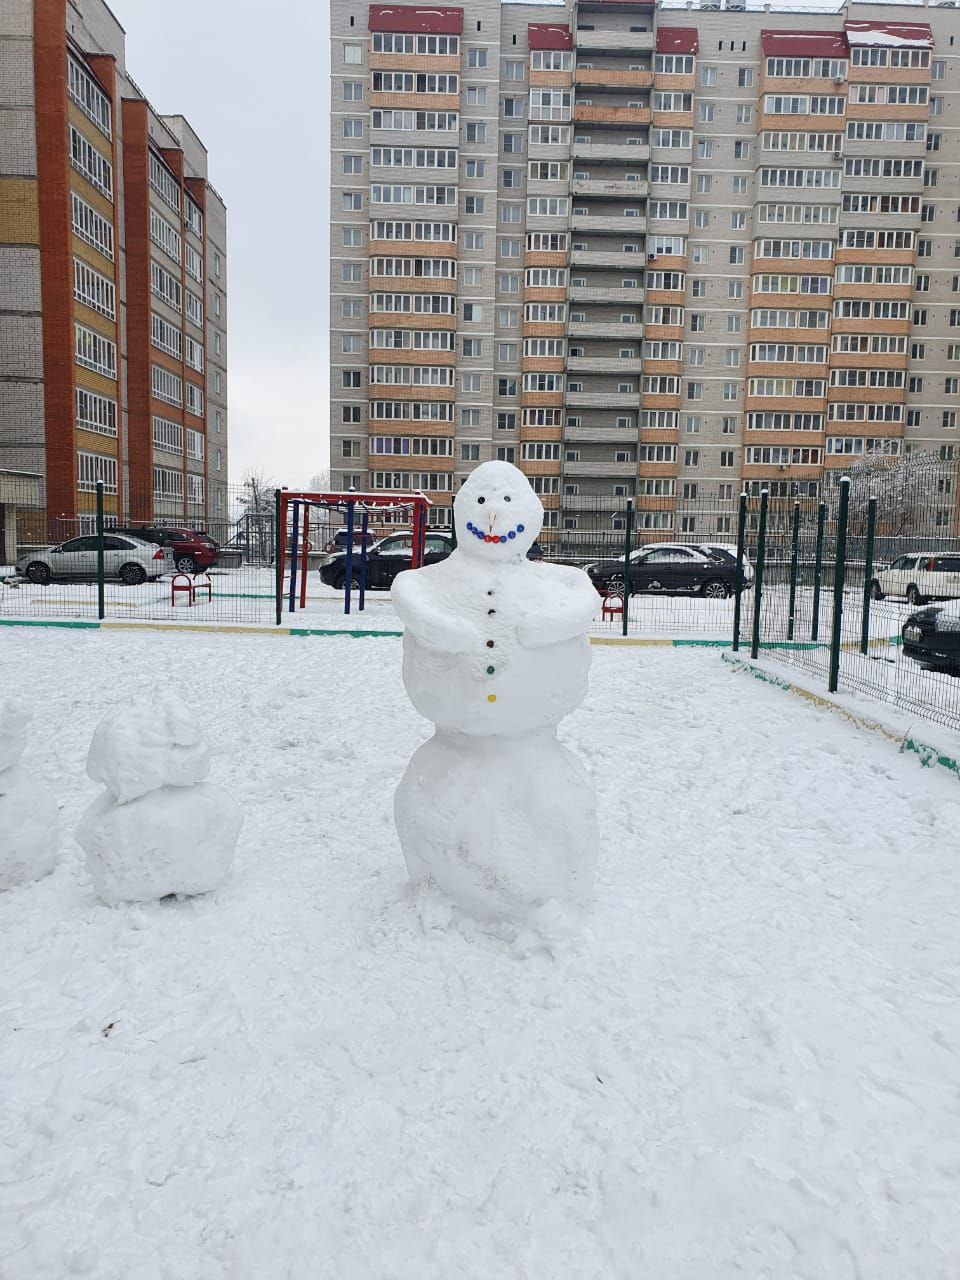 С первым снегом, друзья! Лучший снеговик от нашей читательницы Валентины. 31 октября. 2022 год.